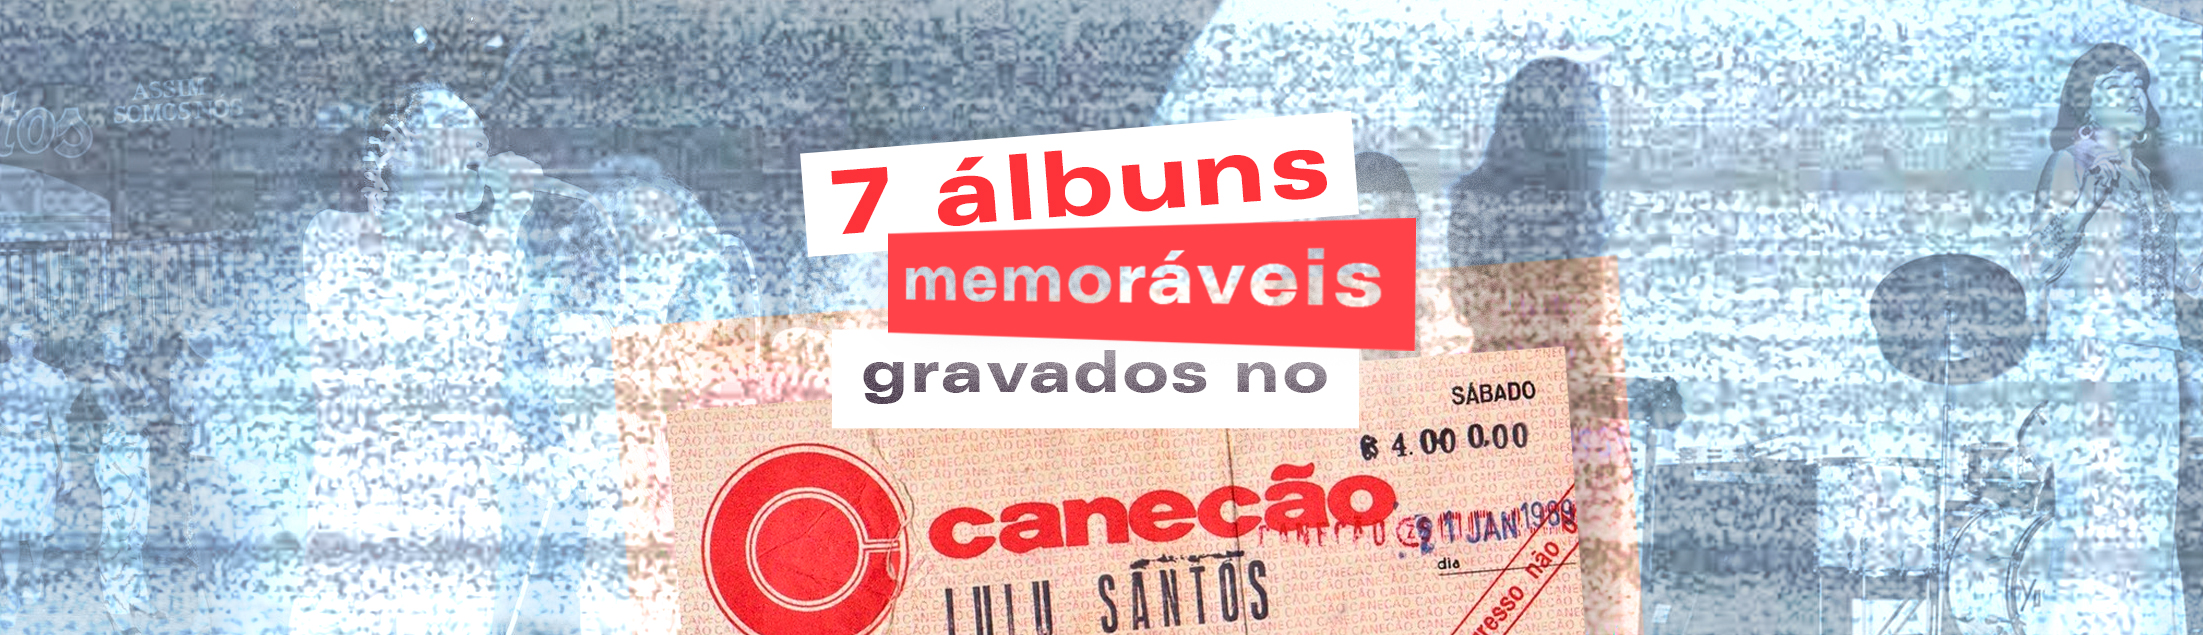 7 álbuns memoráveis gravados ao vivo no Canecão